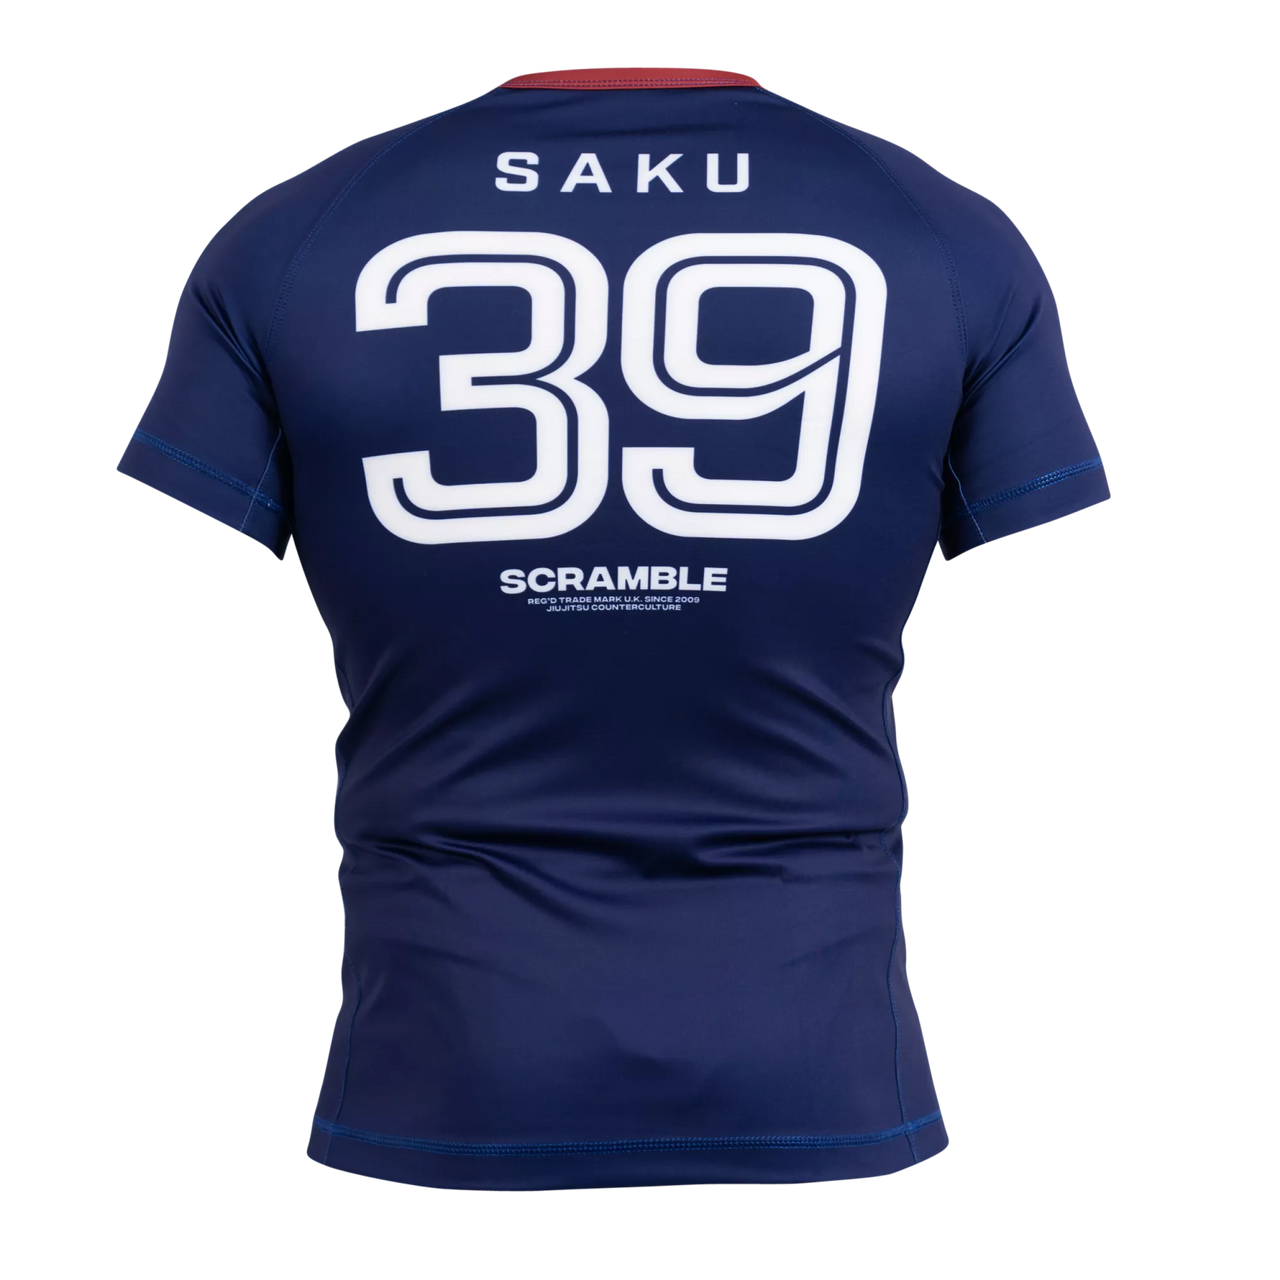 Scramble "SAKU Soccer" Short Sleeve Rash Guard